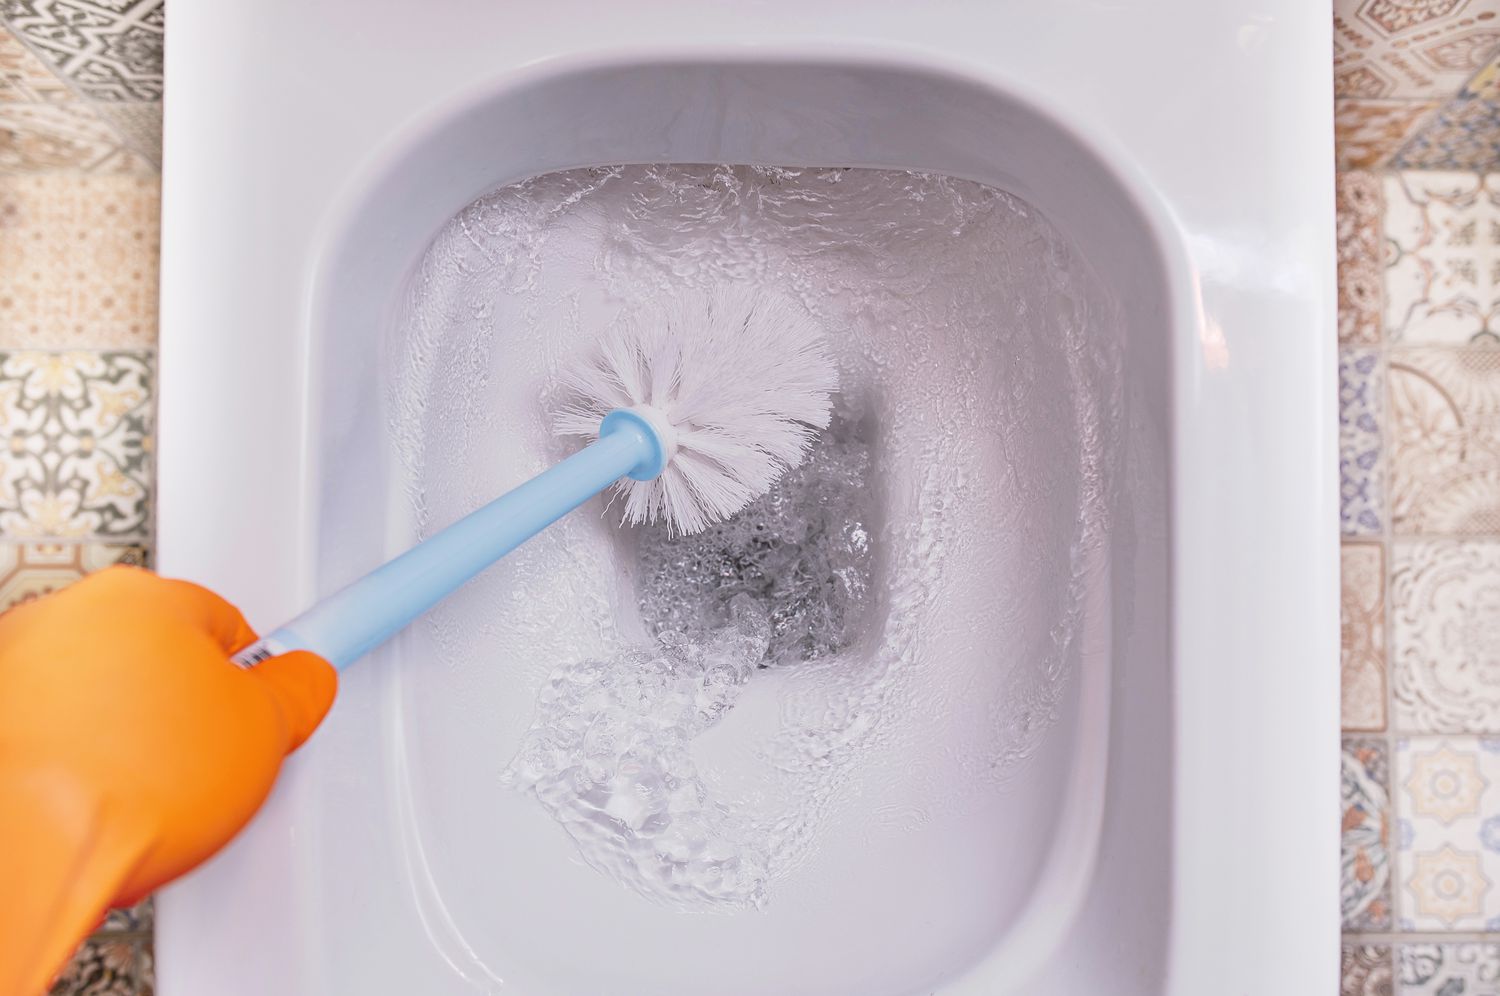 Comment nettoyer une brosse et un support de toilette